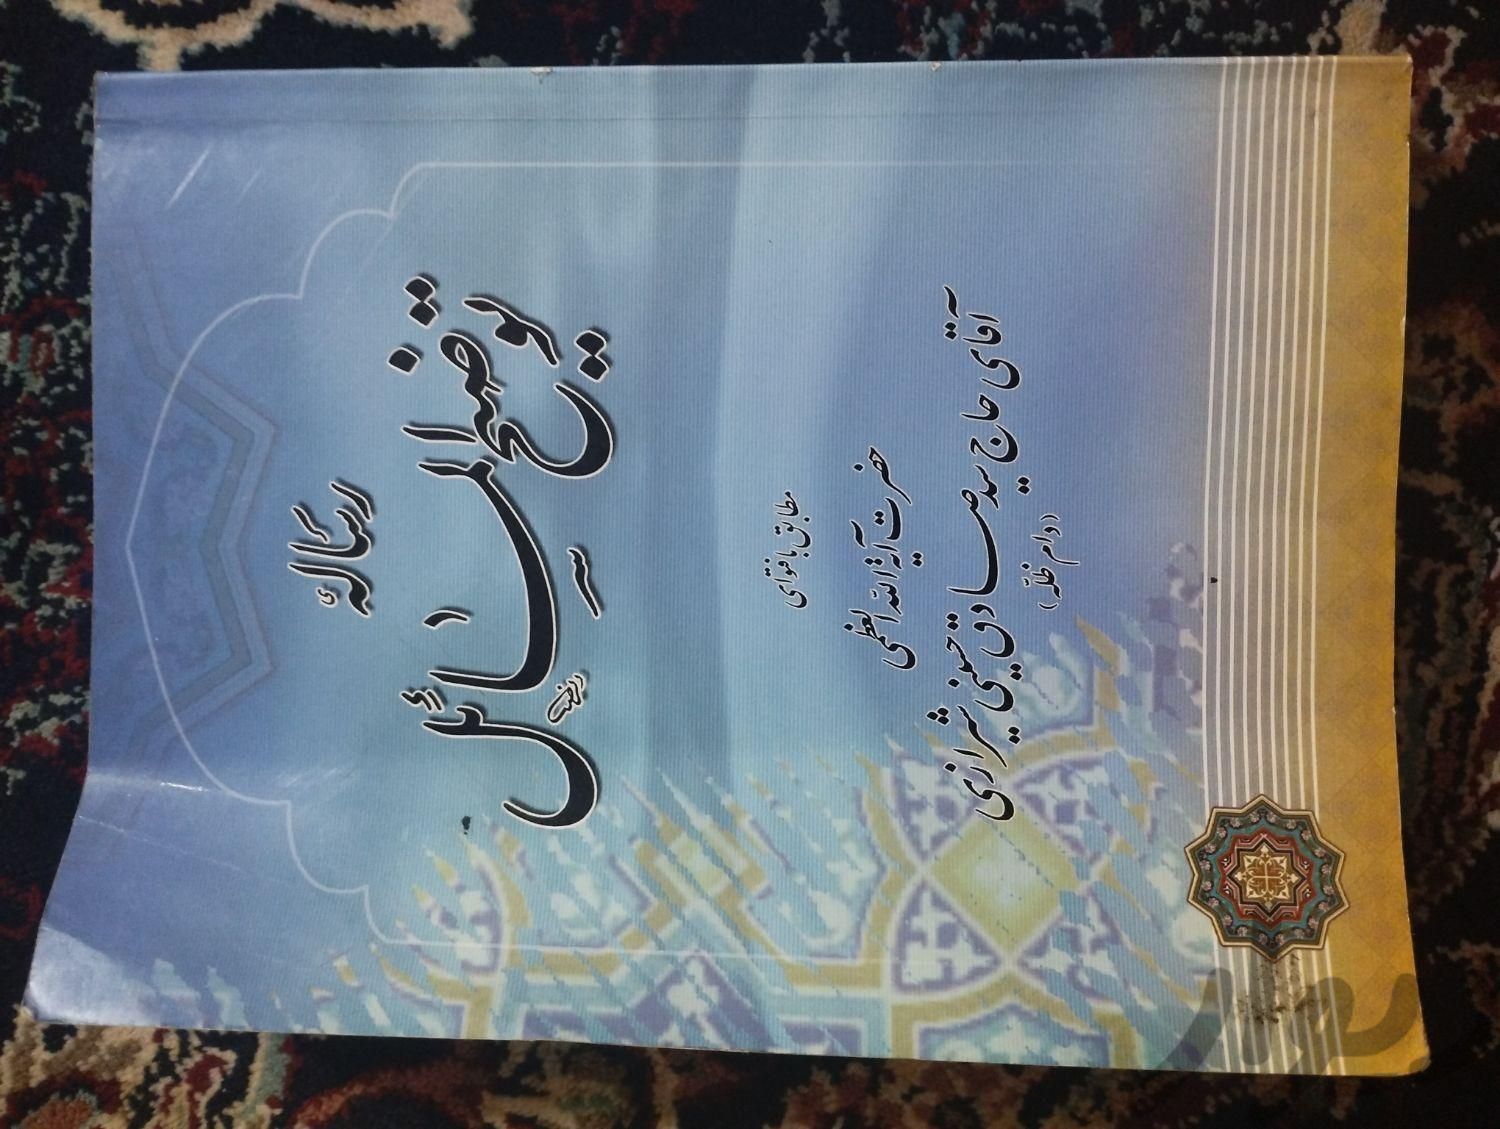 توضیح المسائل تمیز|کتاب و مجله مذهبی|مشهد, شهرک شهید رجایی|دیوار